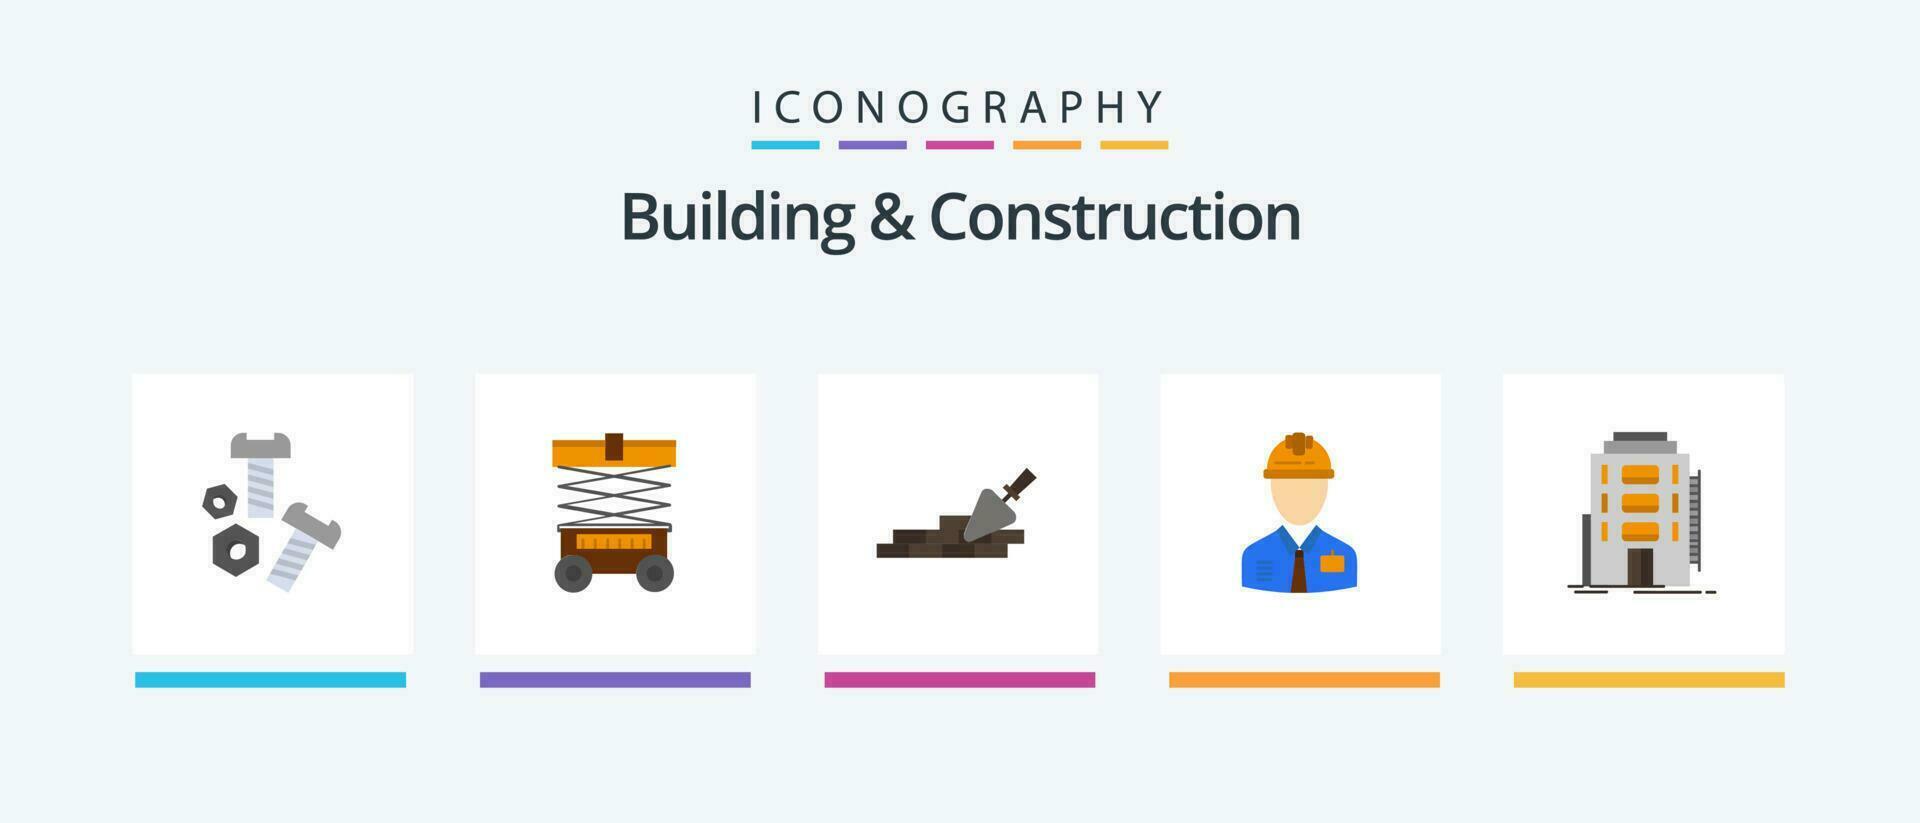 edificio y construcción plano 5 5 icono paquete incluso mano de obra. construcción. industria. viajar creativo íconos diseño vector